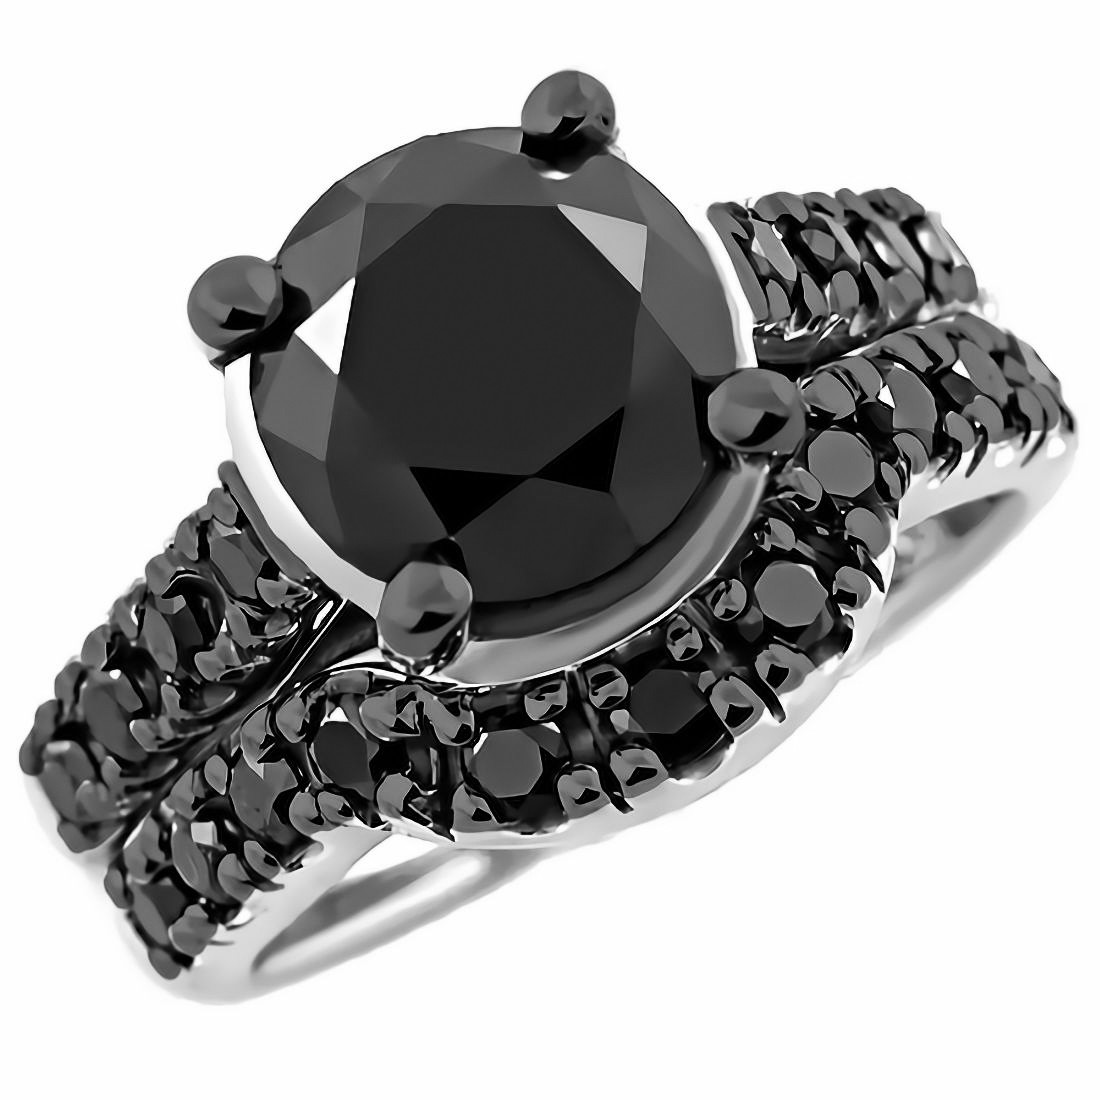  4 Carat Black Diamond Engagement Ring Set